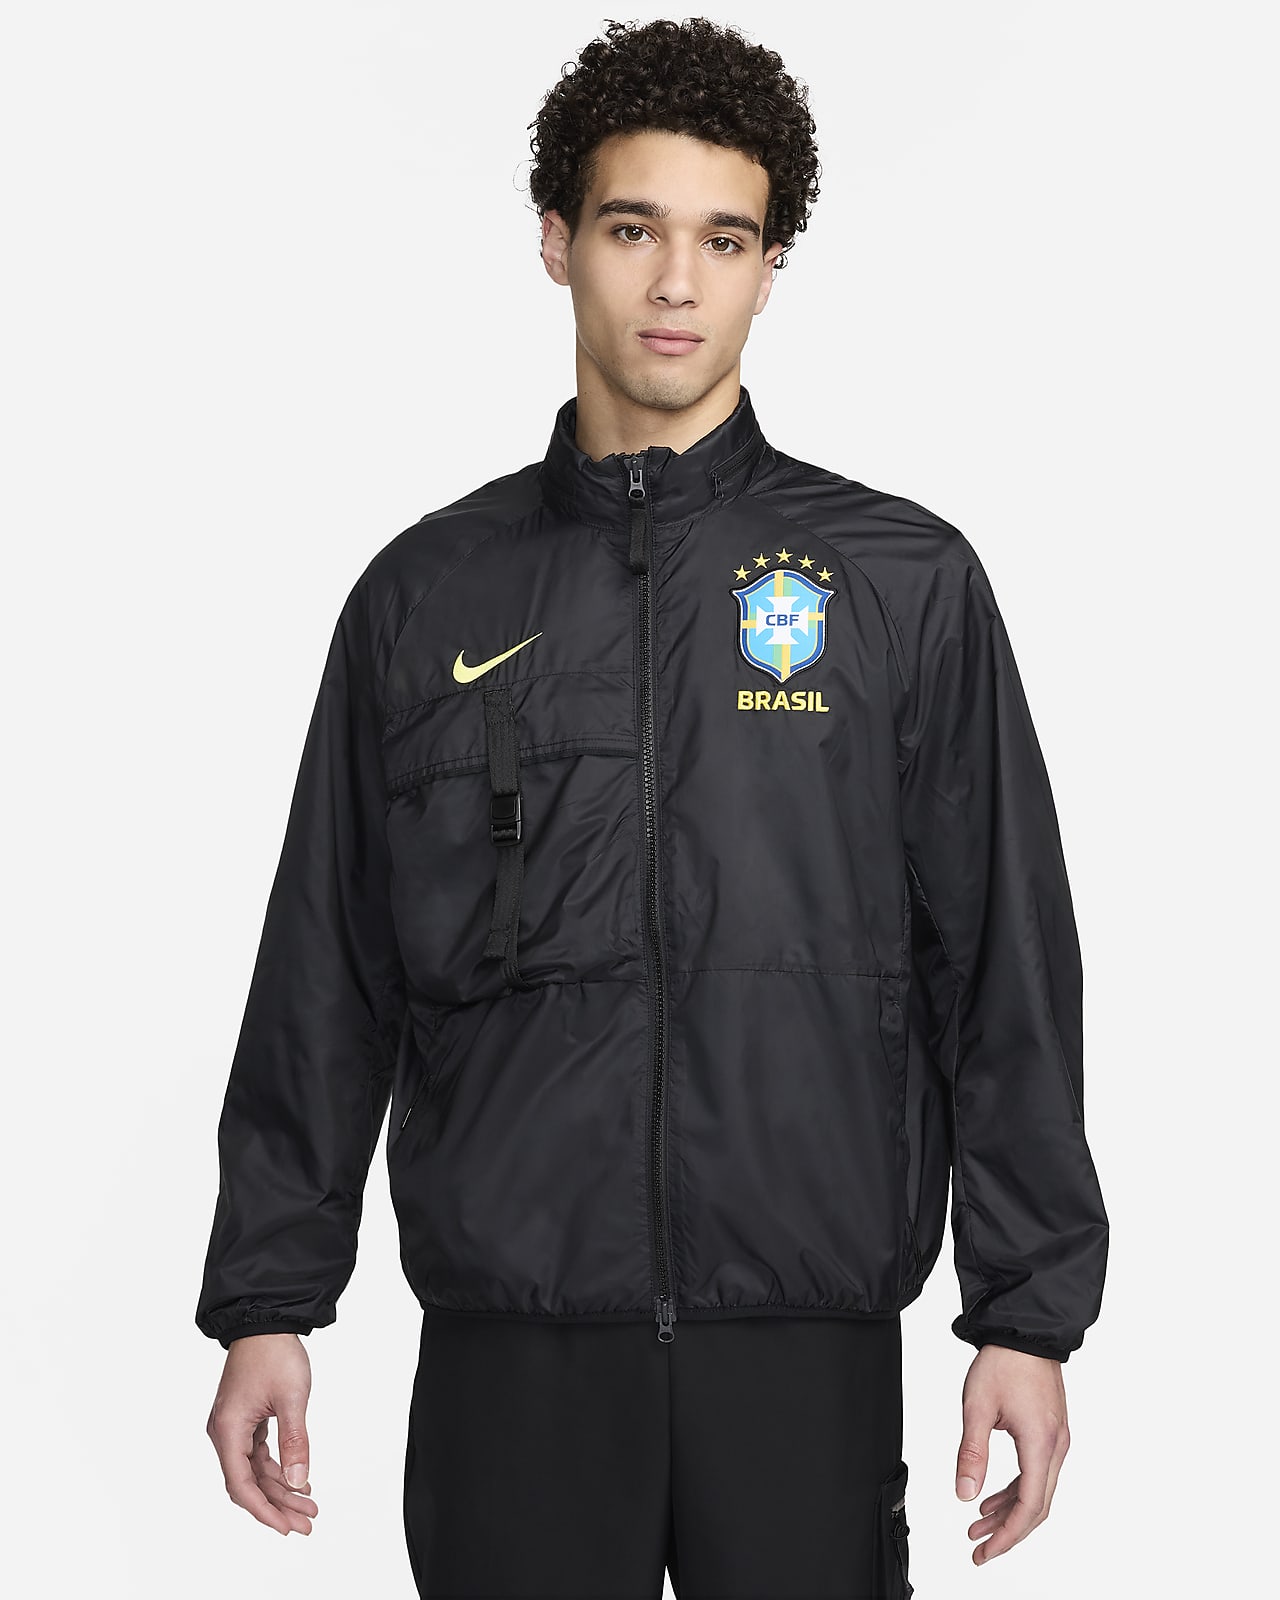 Brazil Men's Nike Soccer Jacket